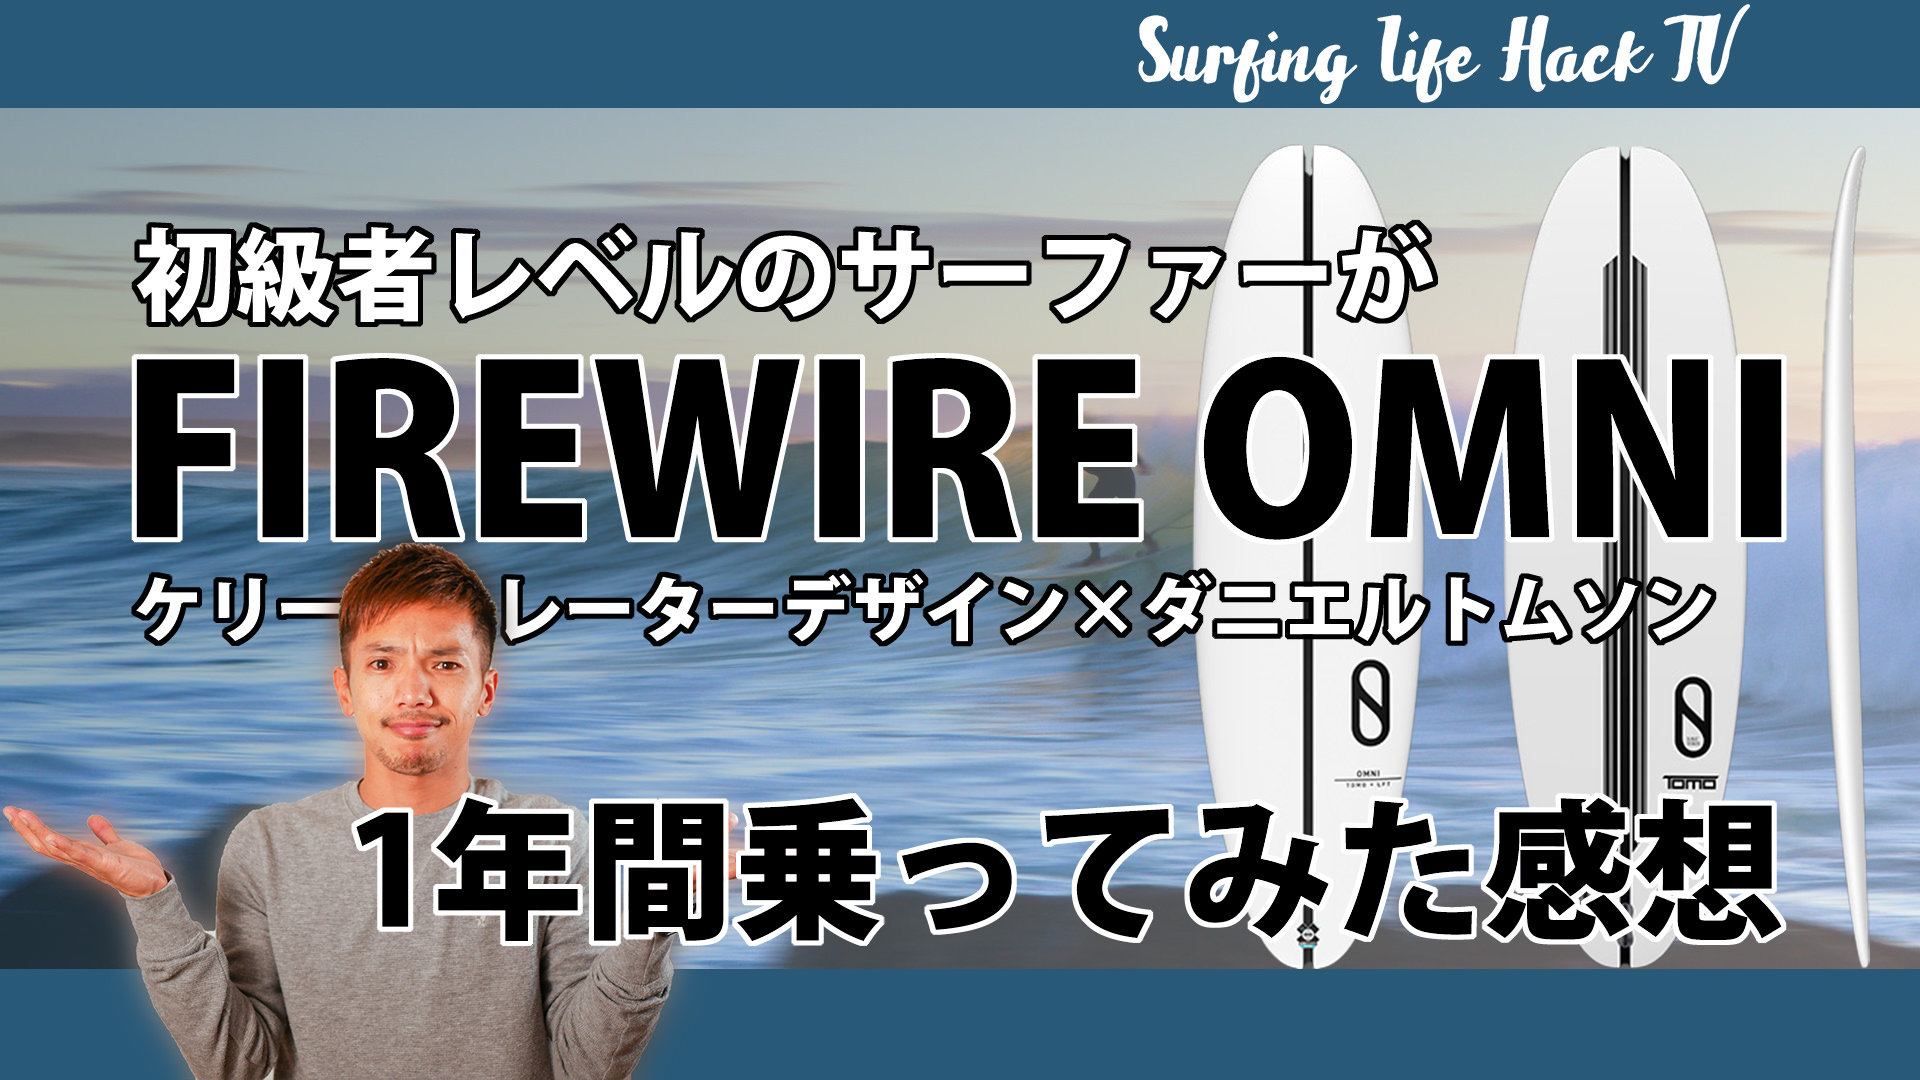 Firewire Omni 1年間乗ってみた感想まとめ ヒガシーサーのサーフハック公式ブログ